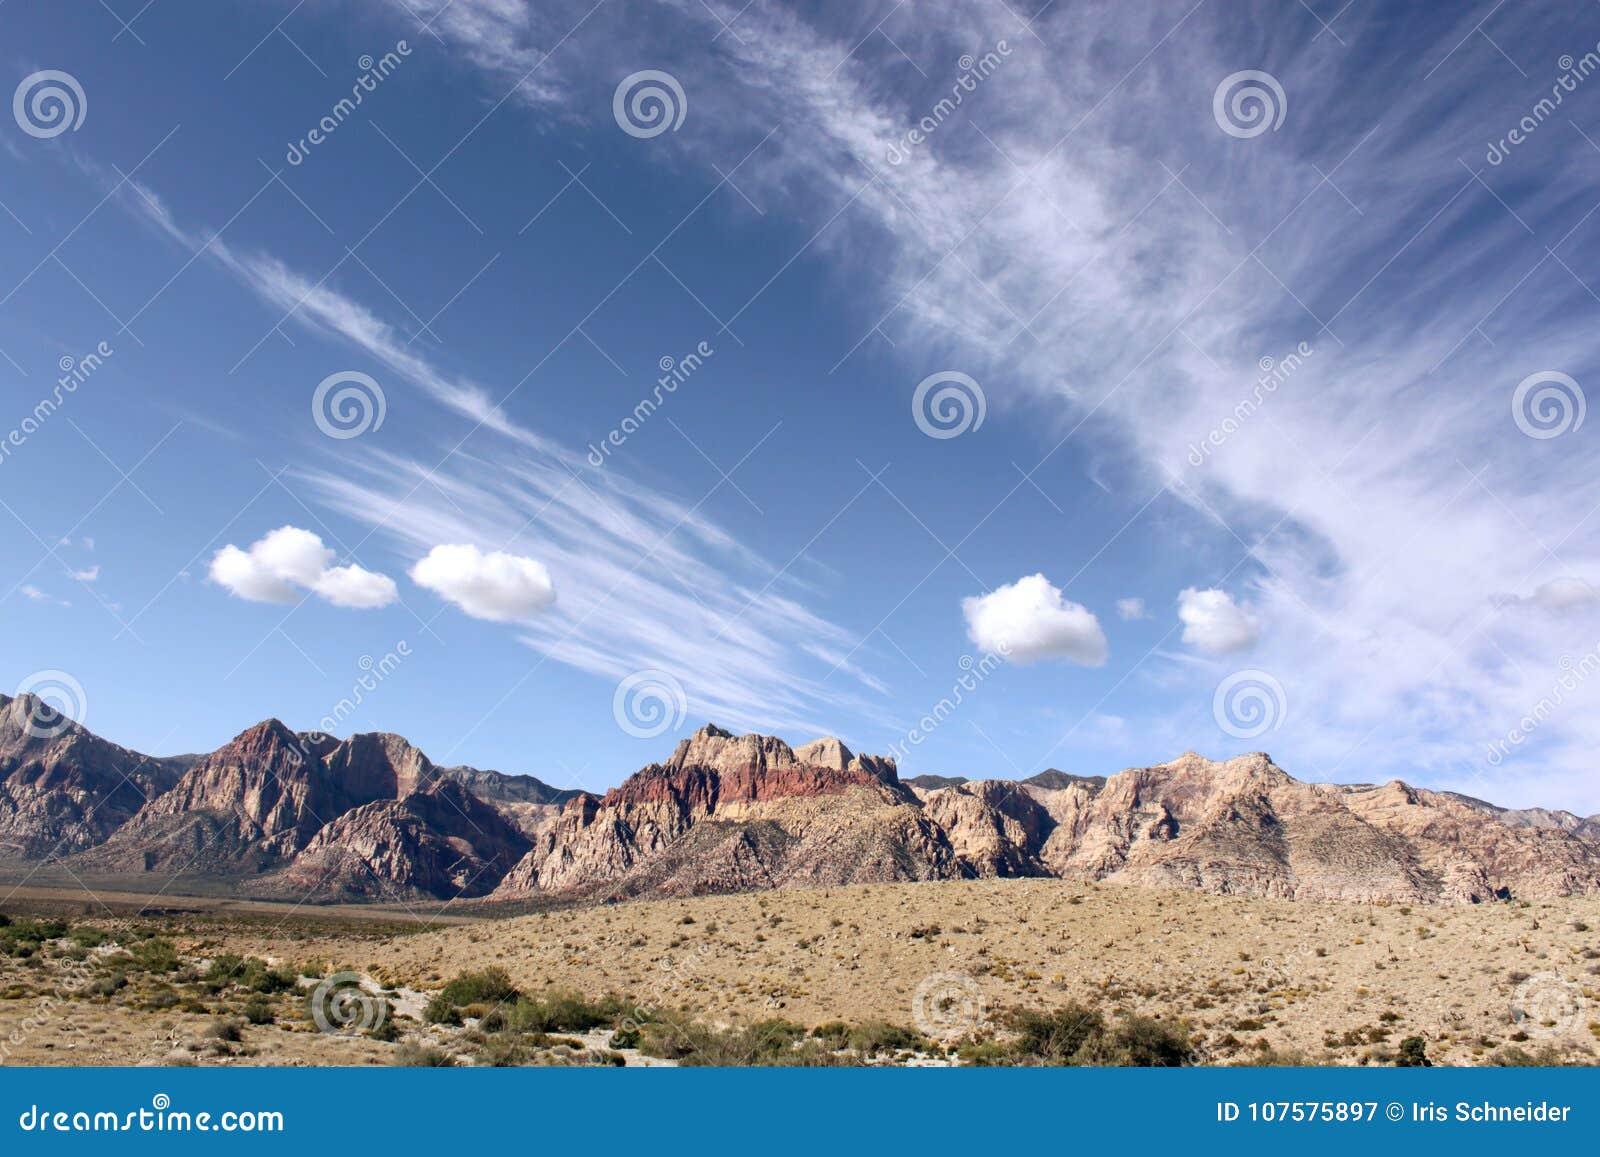 blue skies at redrock canyon las vegas nevada